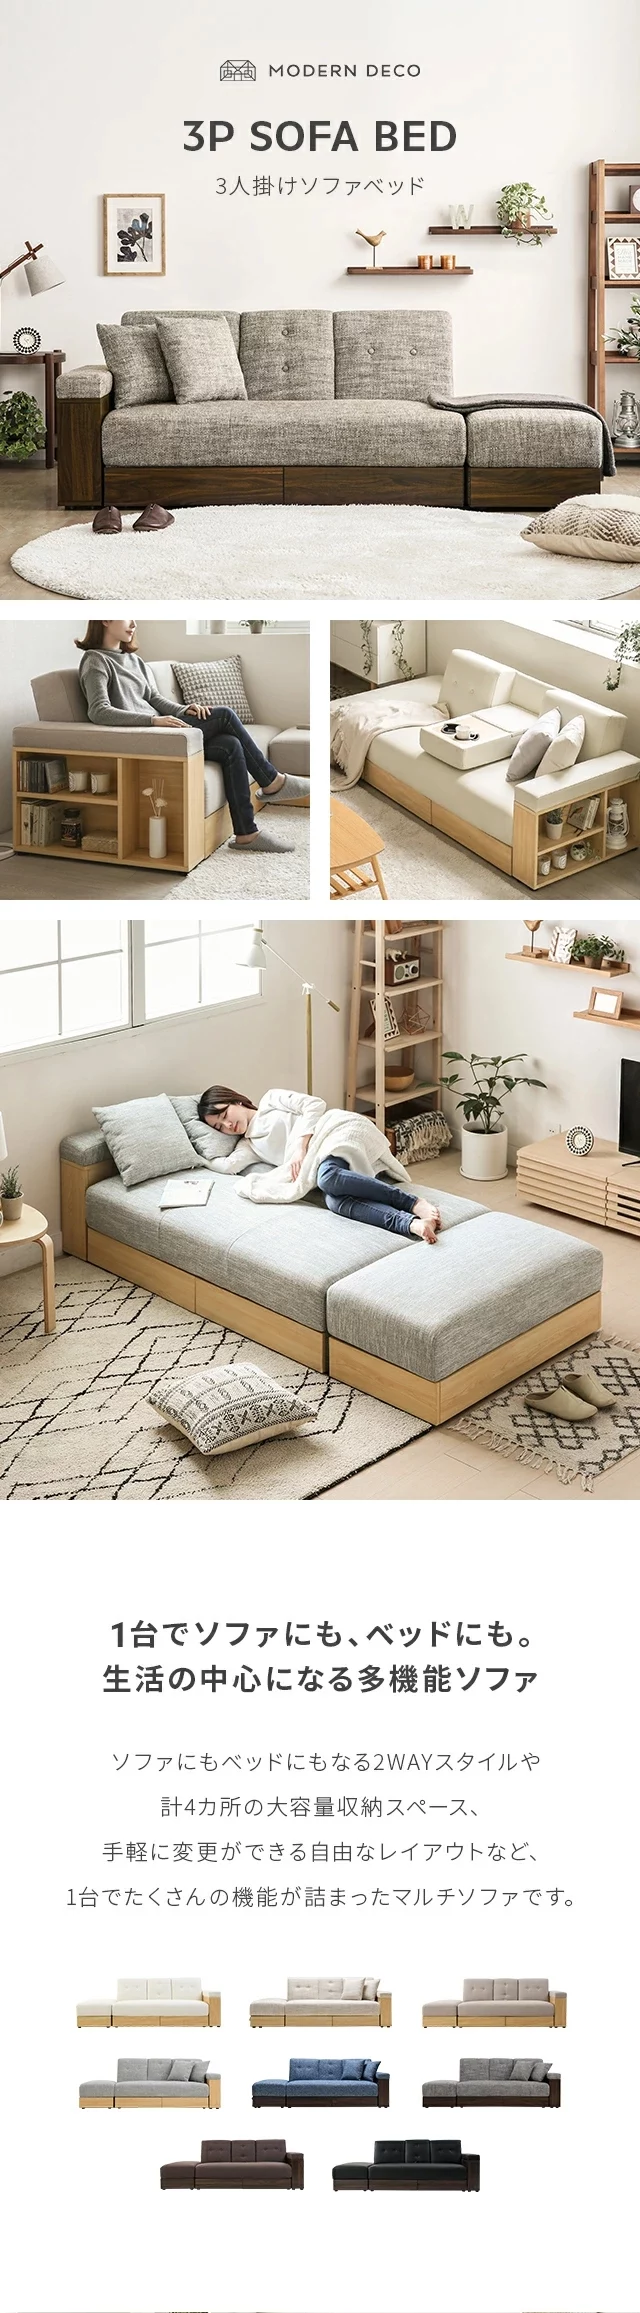 3P SOFA BED、1台でソファにも、ベッドにも。生活の中心になる多機能ソファ